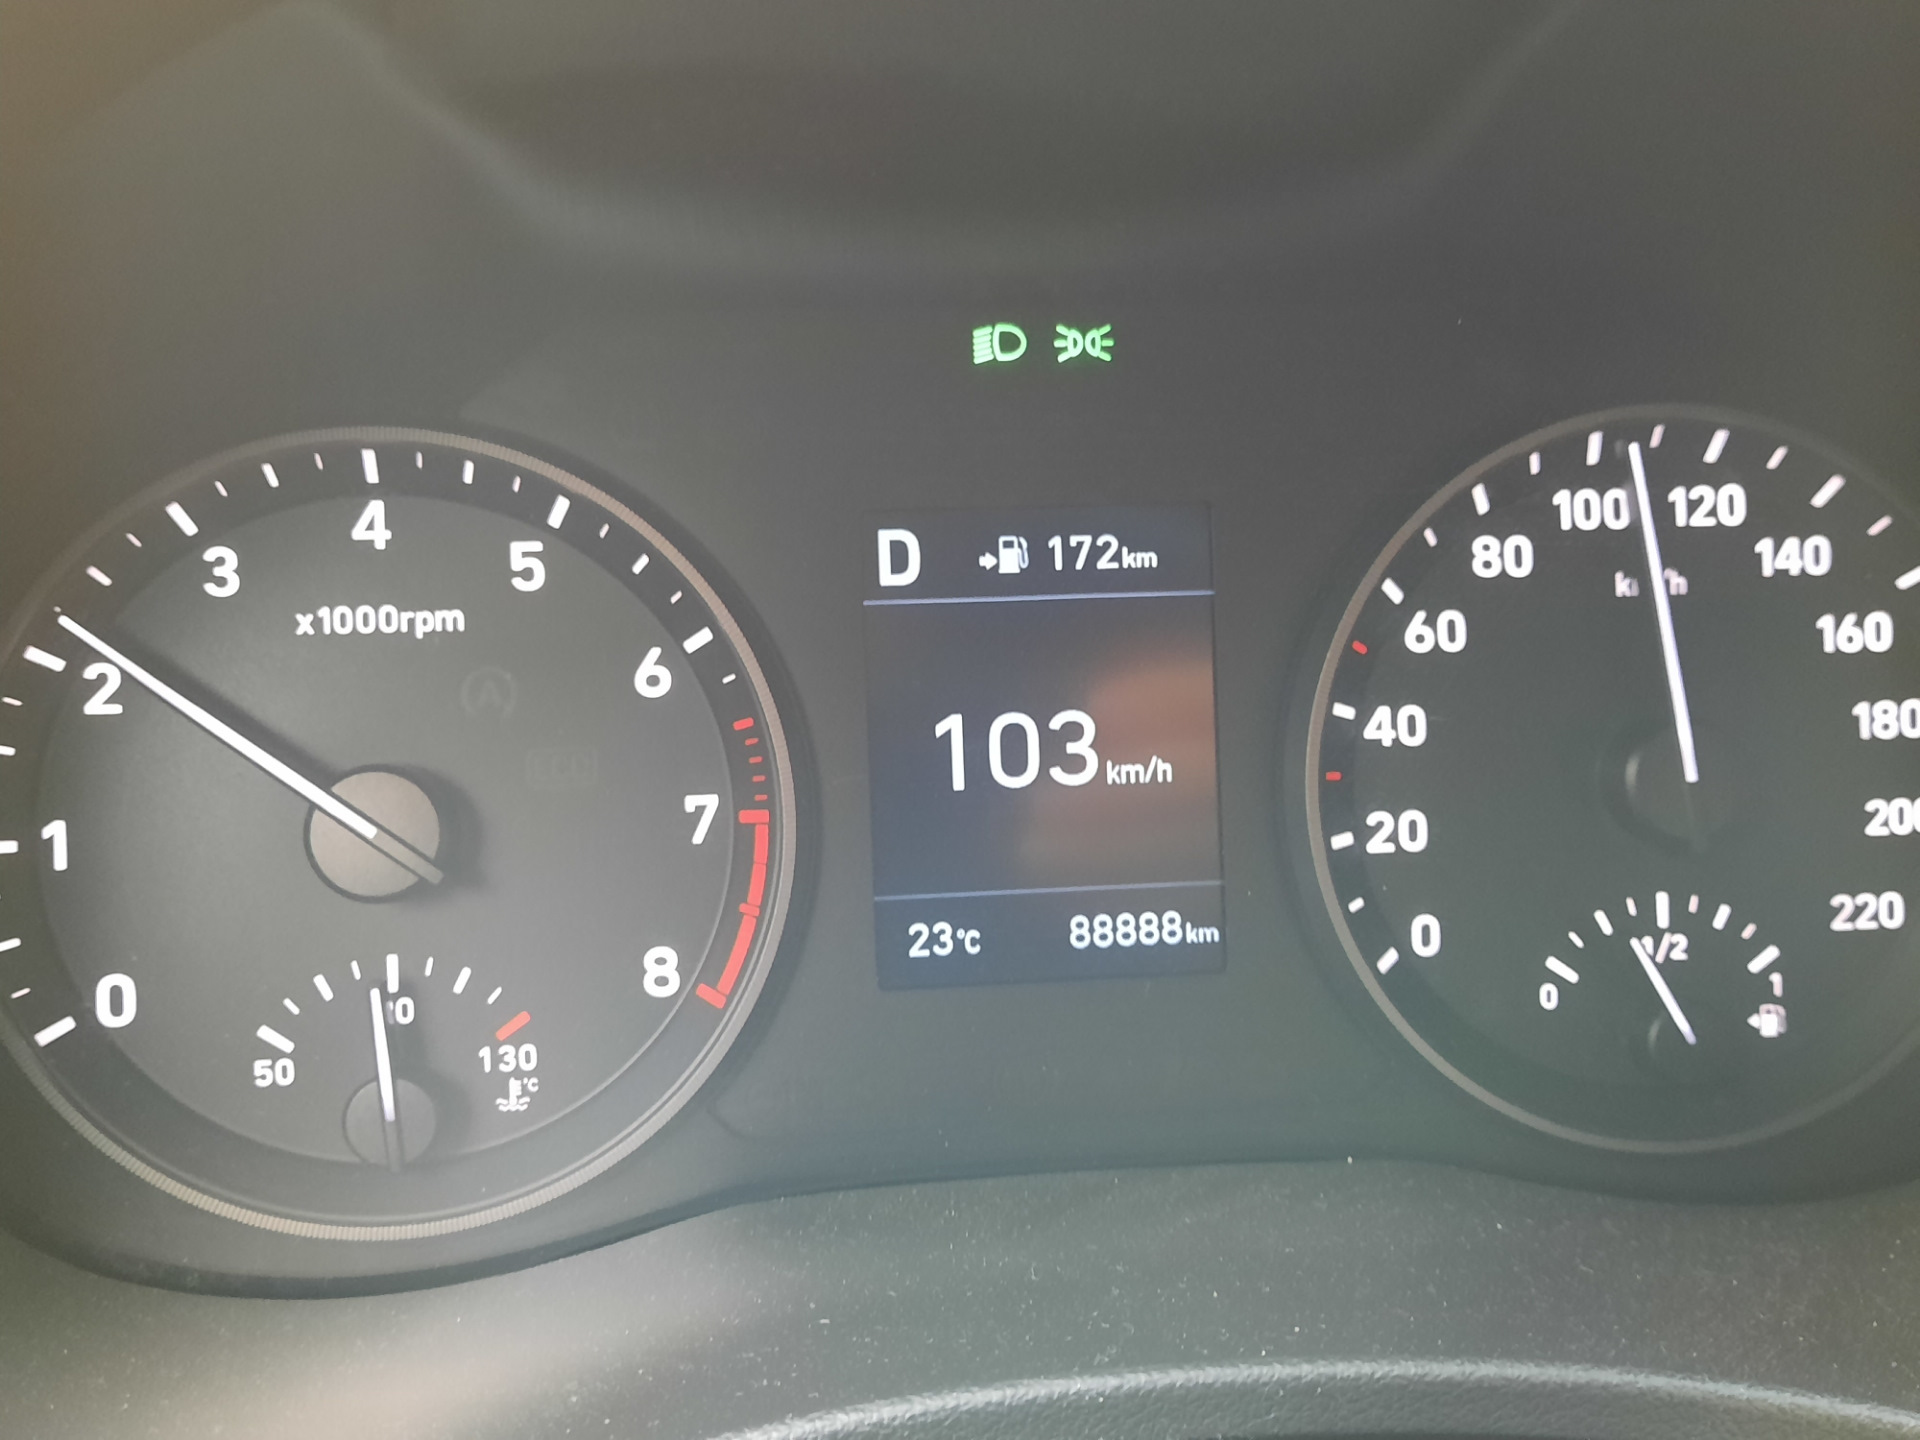 Рабочая температура двигателя автомобиля